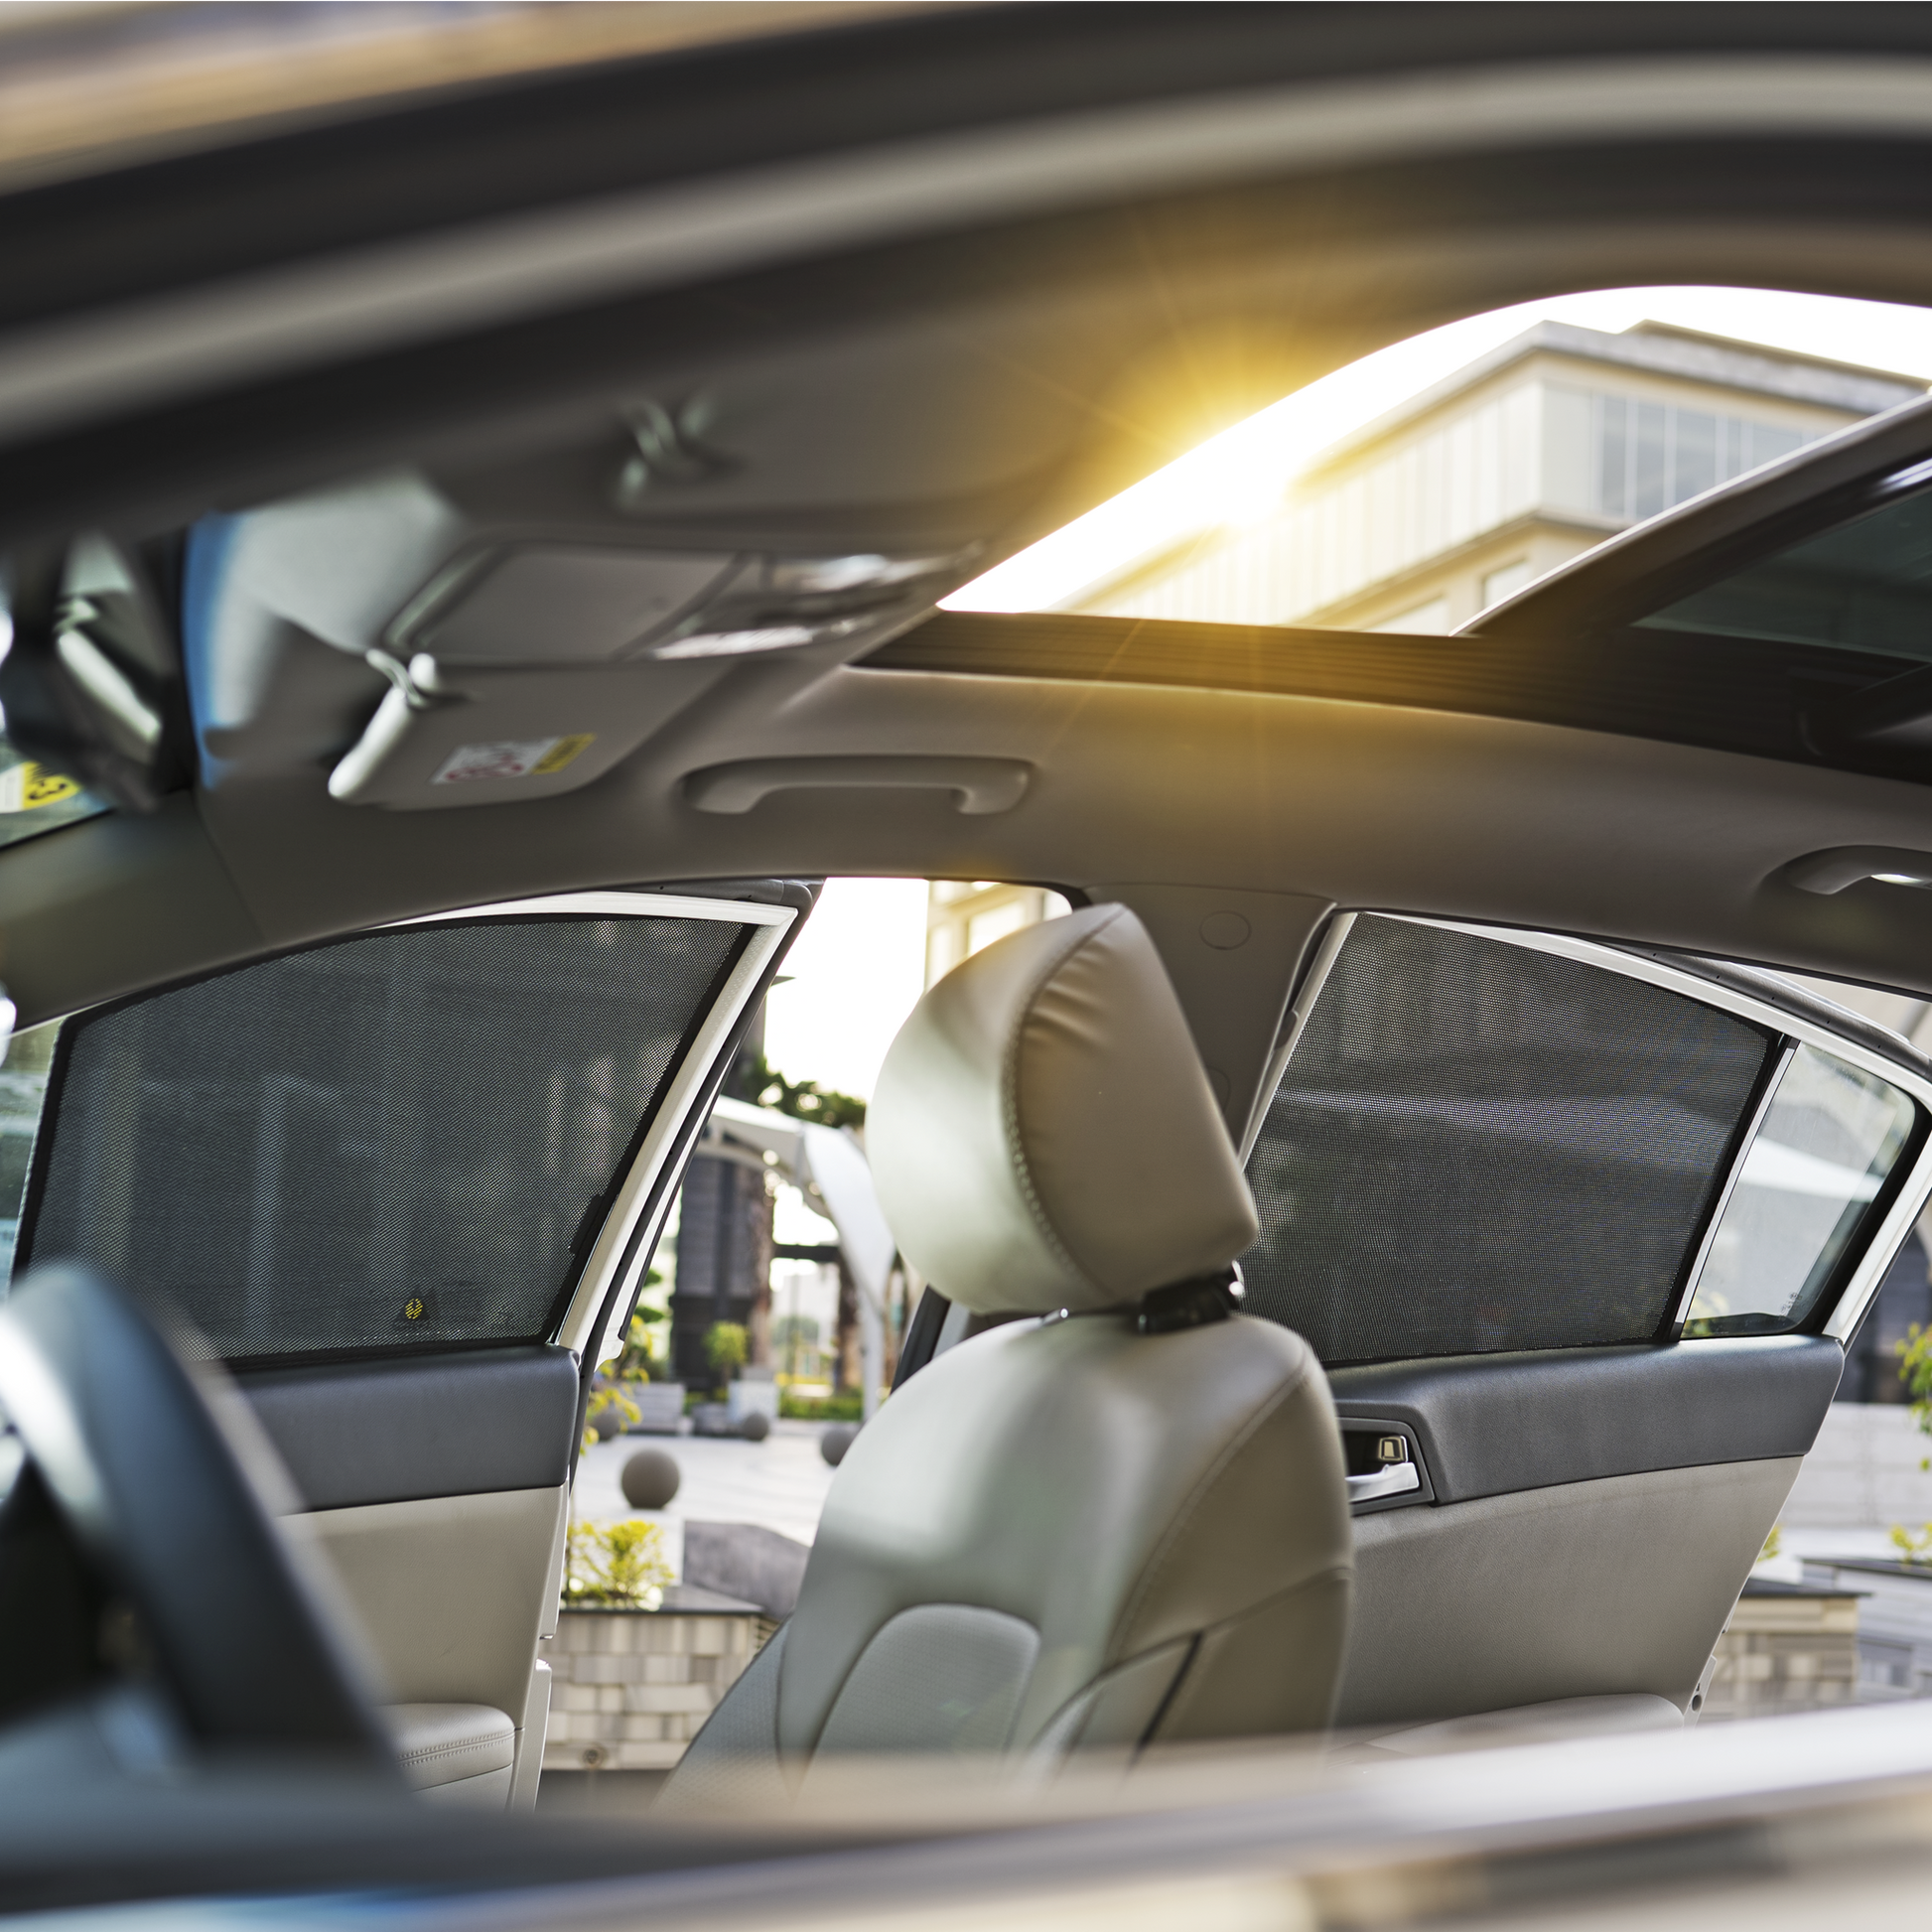 Lexus RX 4th Gen Car Window Shades (AL20; 2016-2022)